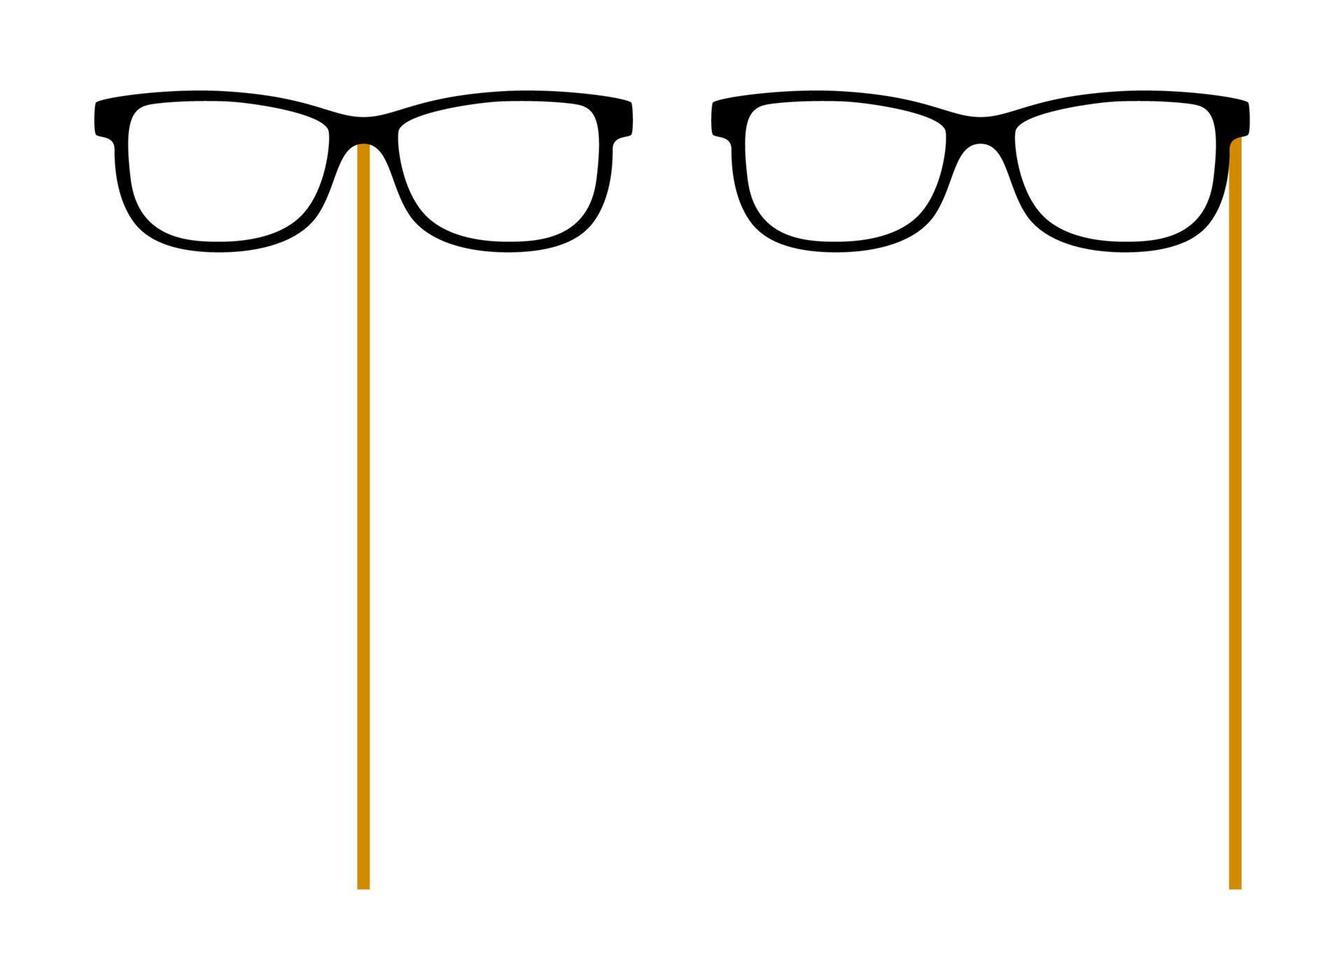 óculos com vara de madeira no fundo branco vetor